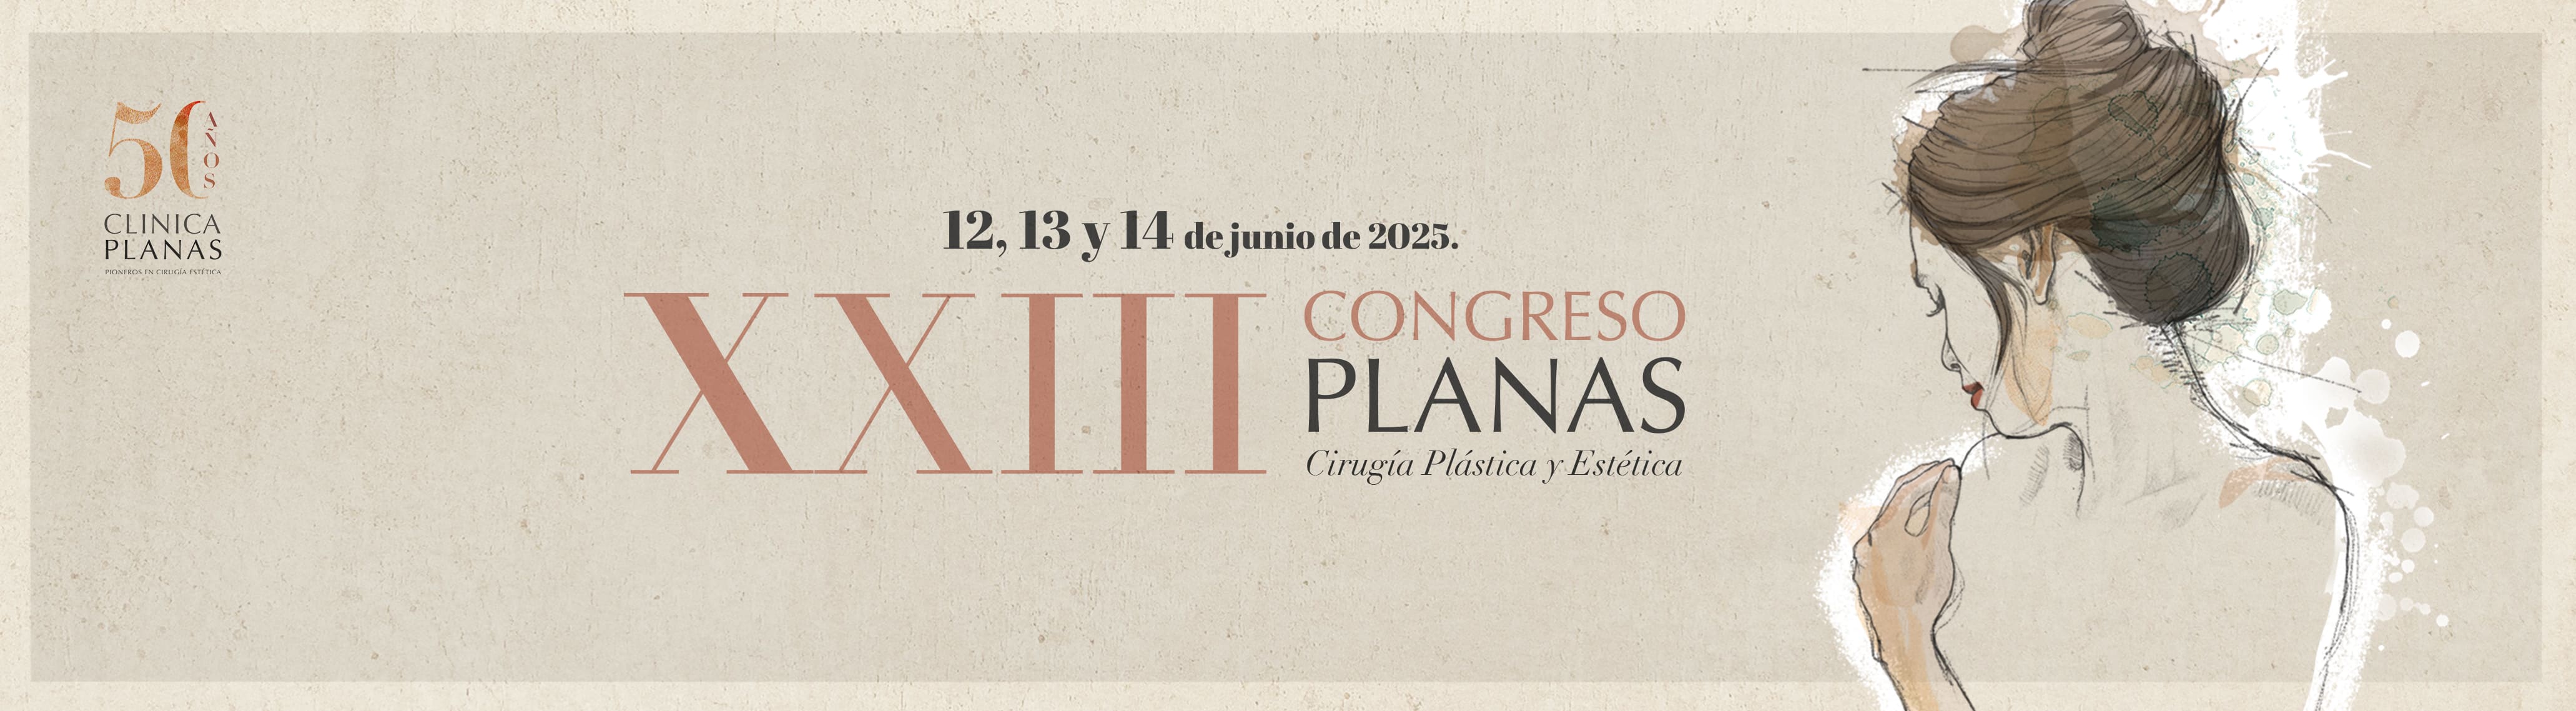 XXII Congreso Planas